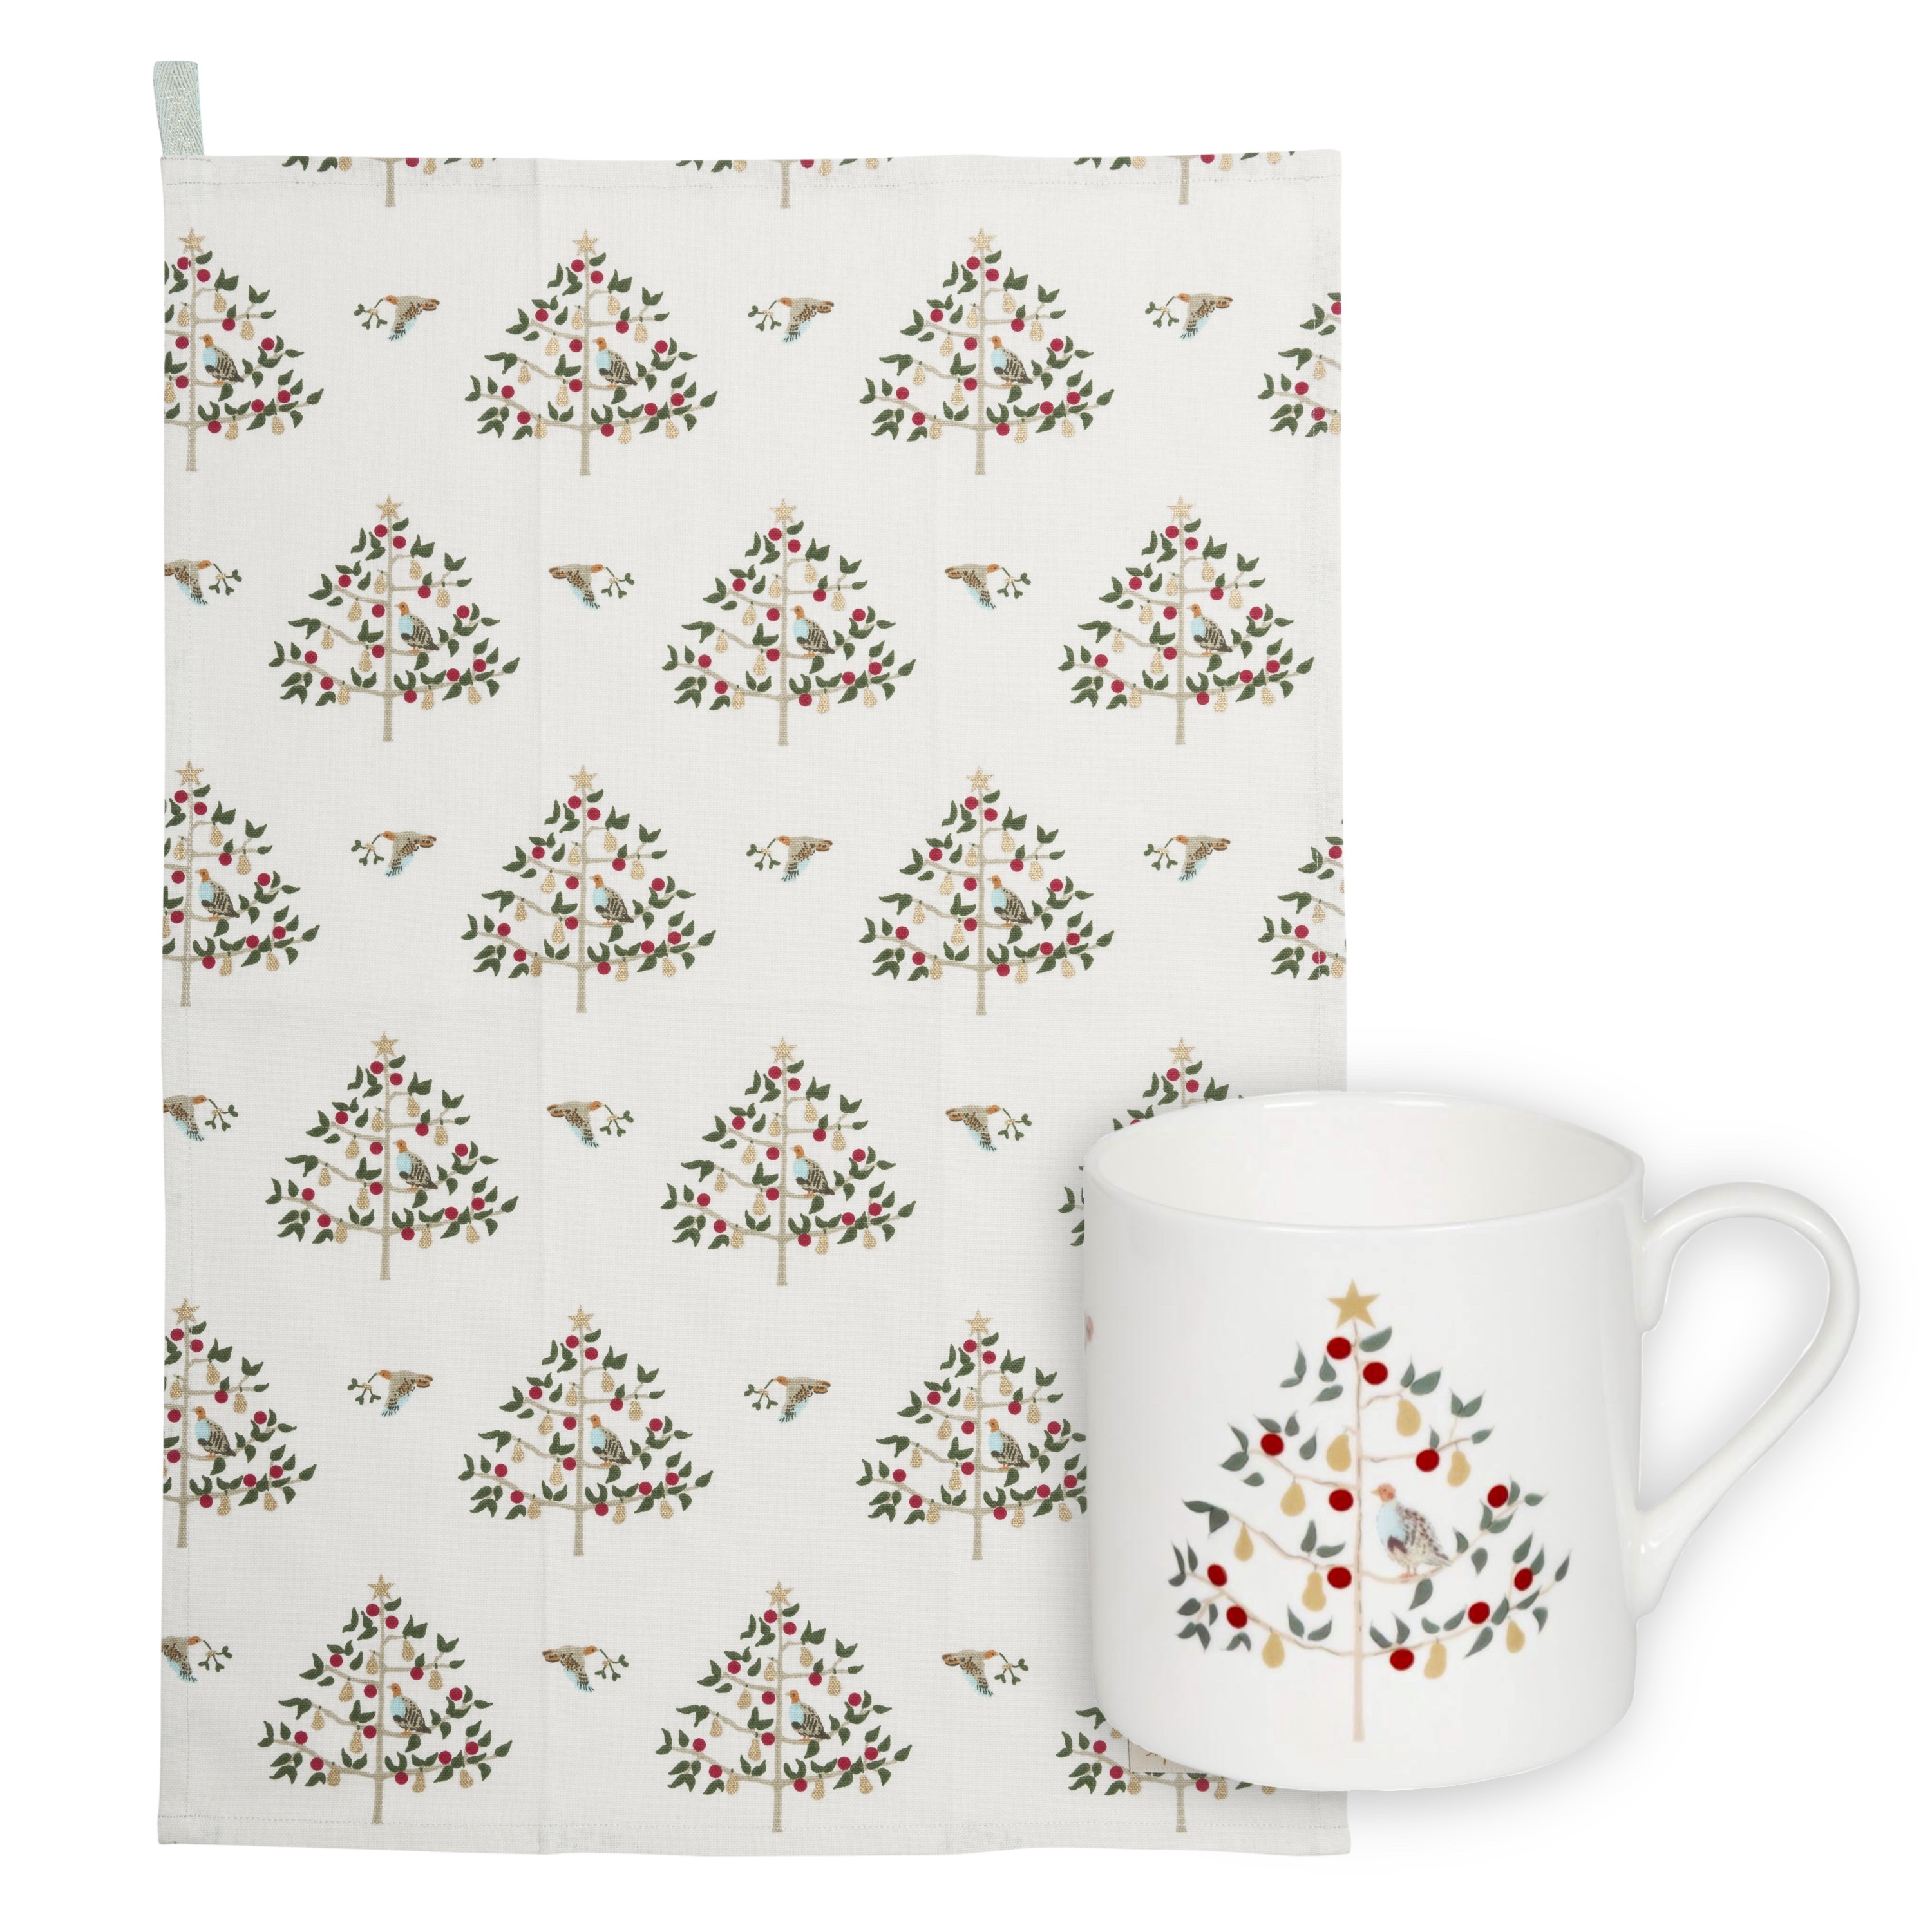 Tea towel and mug gift